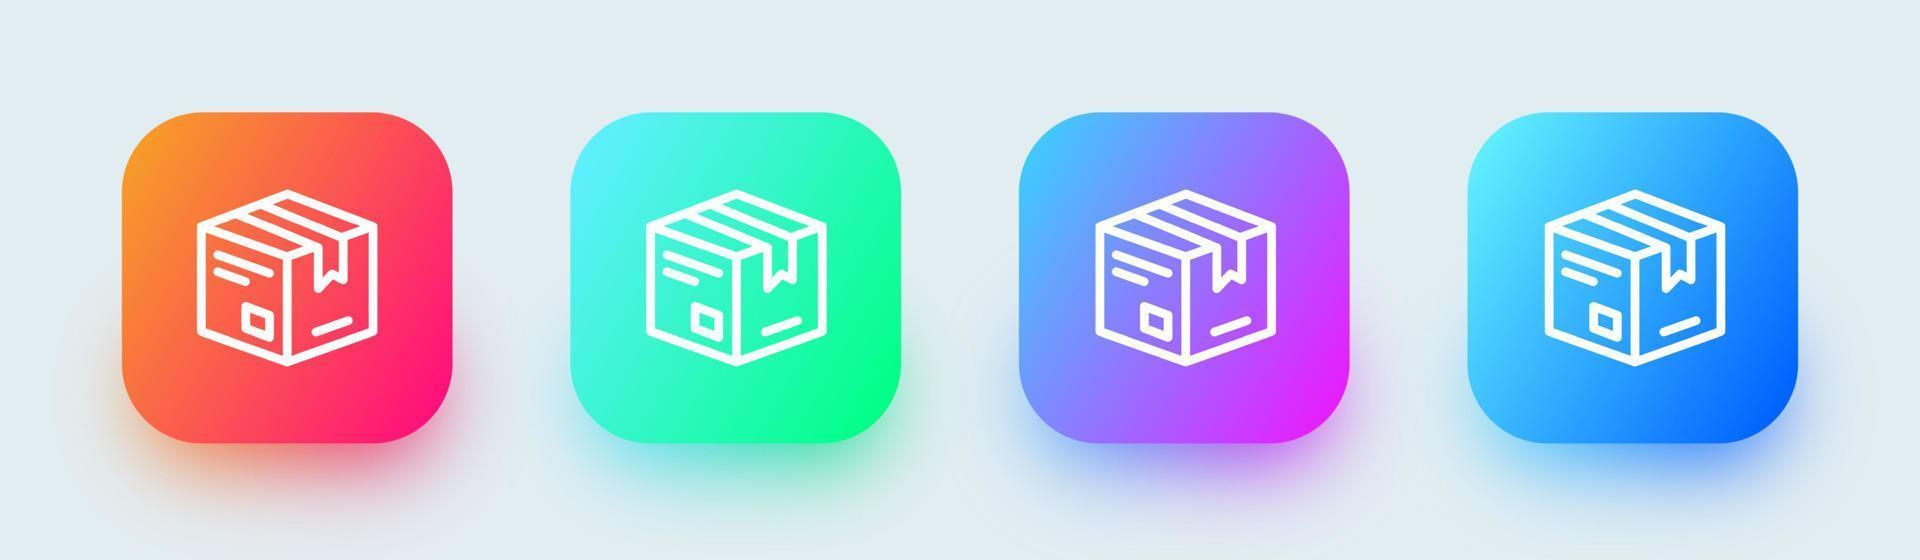 icône de ligne de paquet dans des couleurs dégradées carrées. illustration vectorielle de signes de boîte d'expédition. vecteur